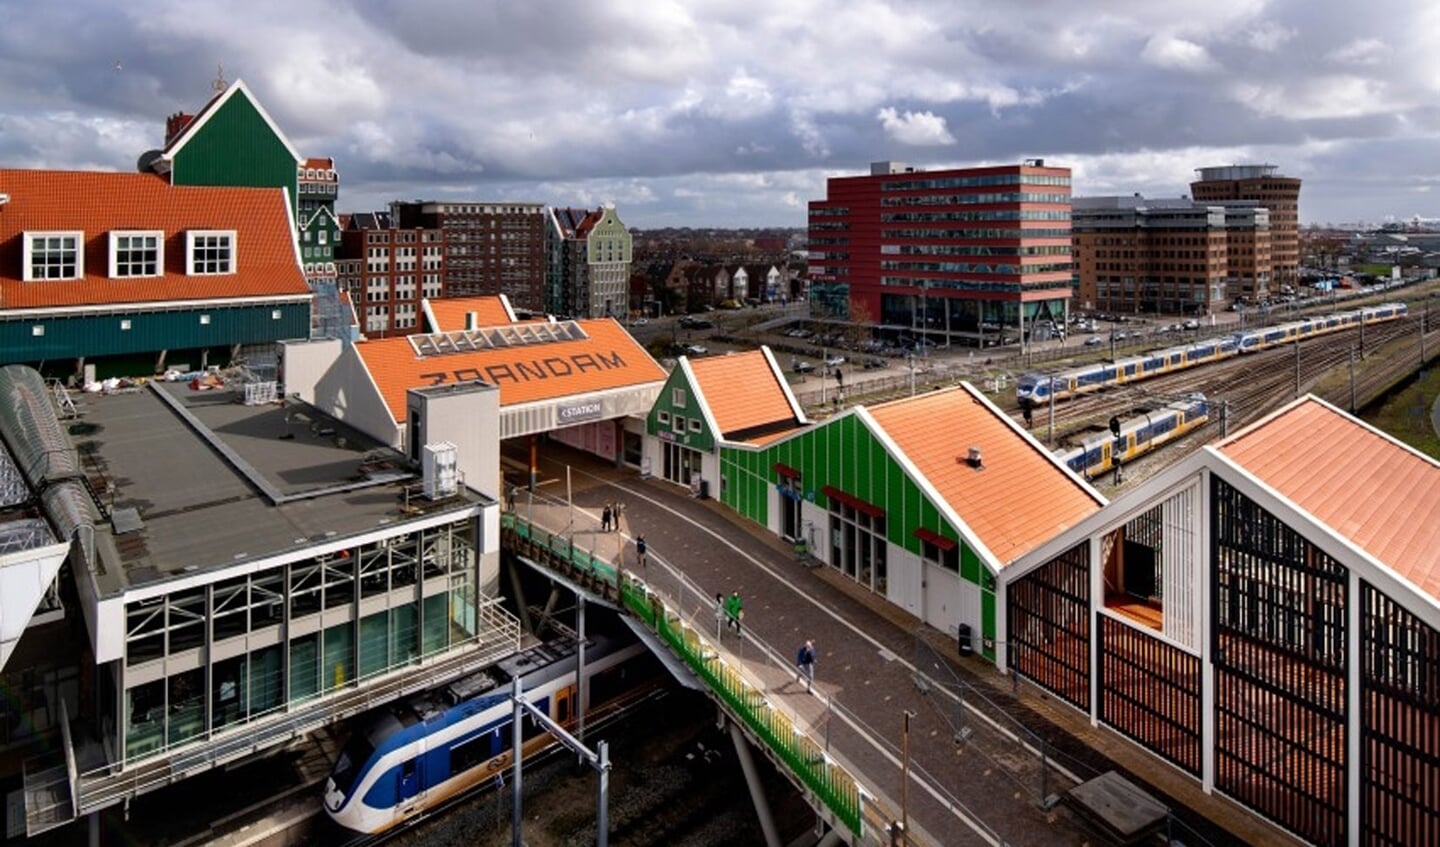 En hier slingert De Slinger naar toe: het NS station Zaandam.